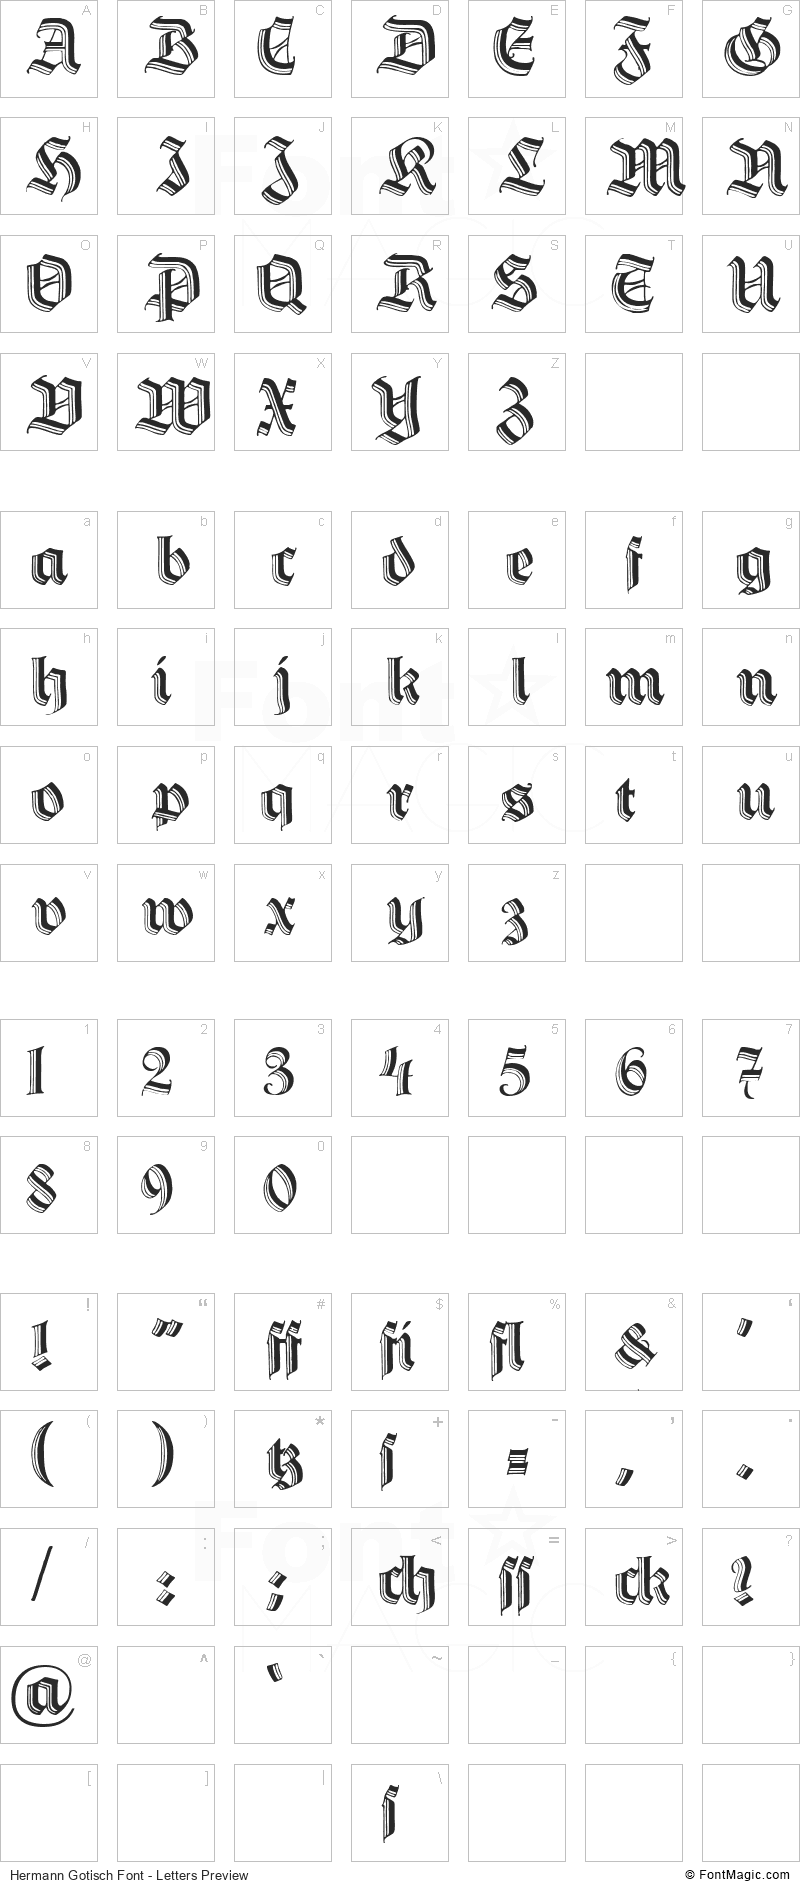 Hermann Gotisch Font - All Latters Preview Chart